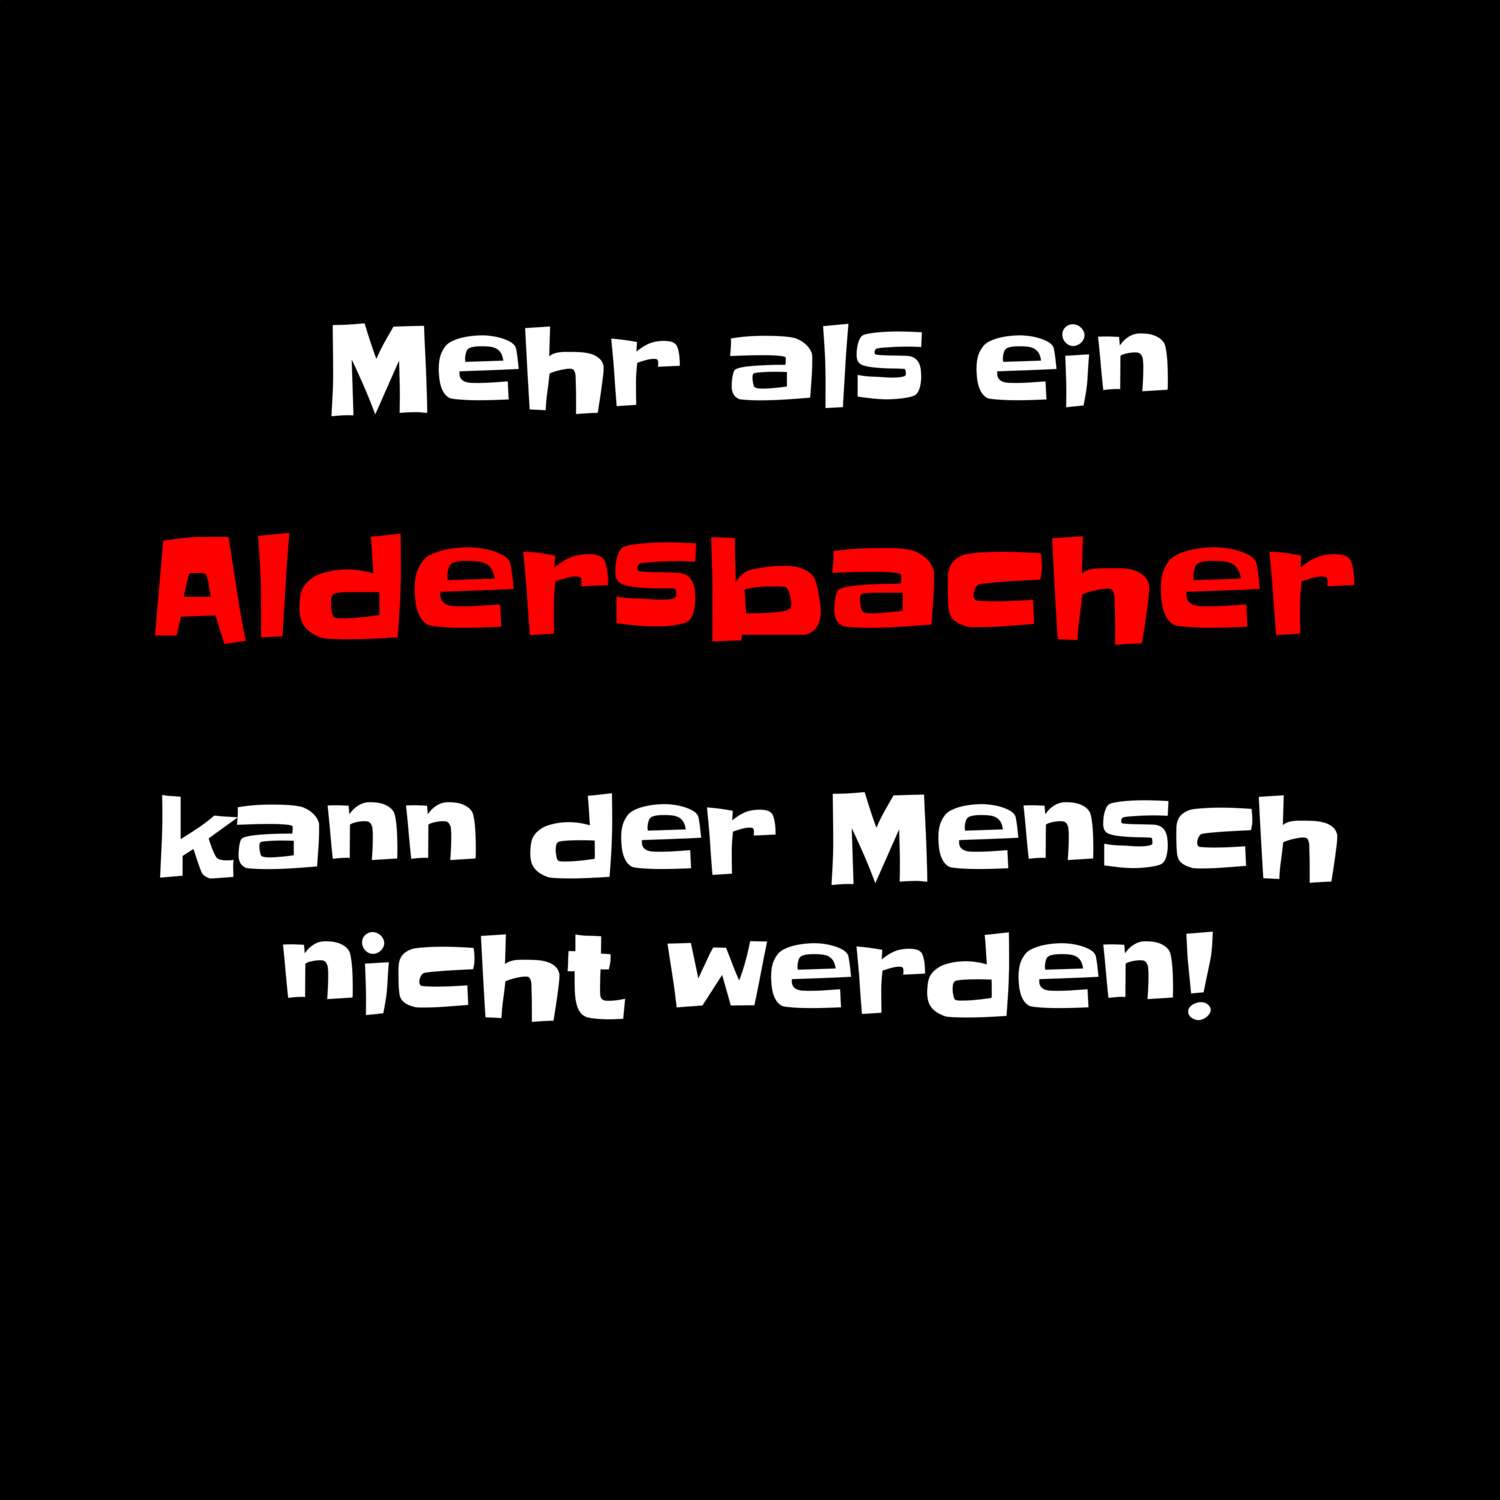 Aldersbach T-Shirt »Mehr als ein«